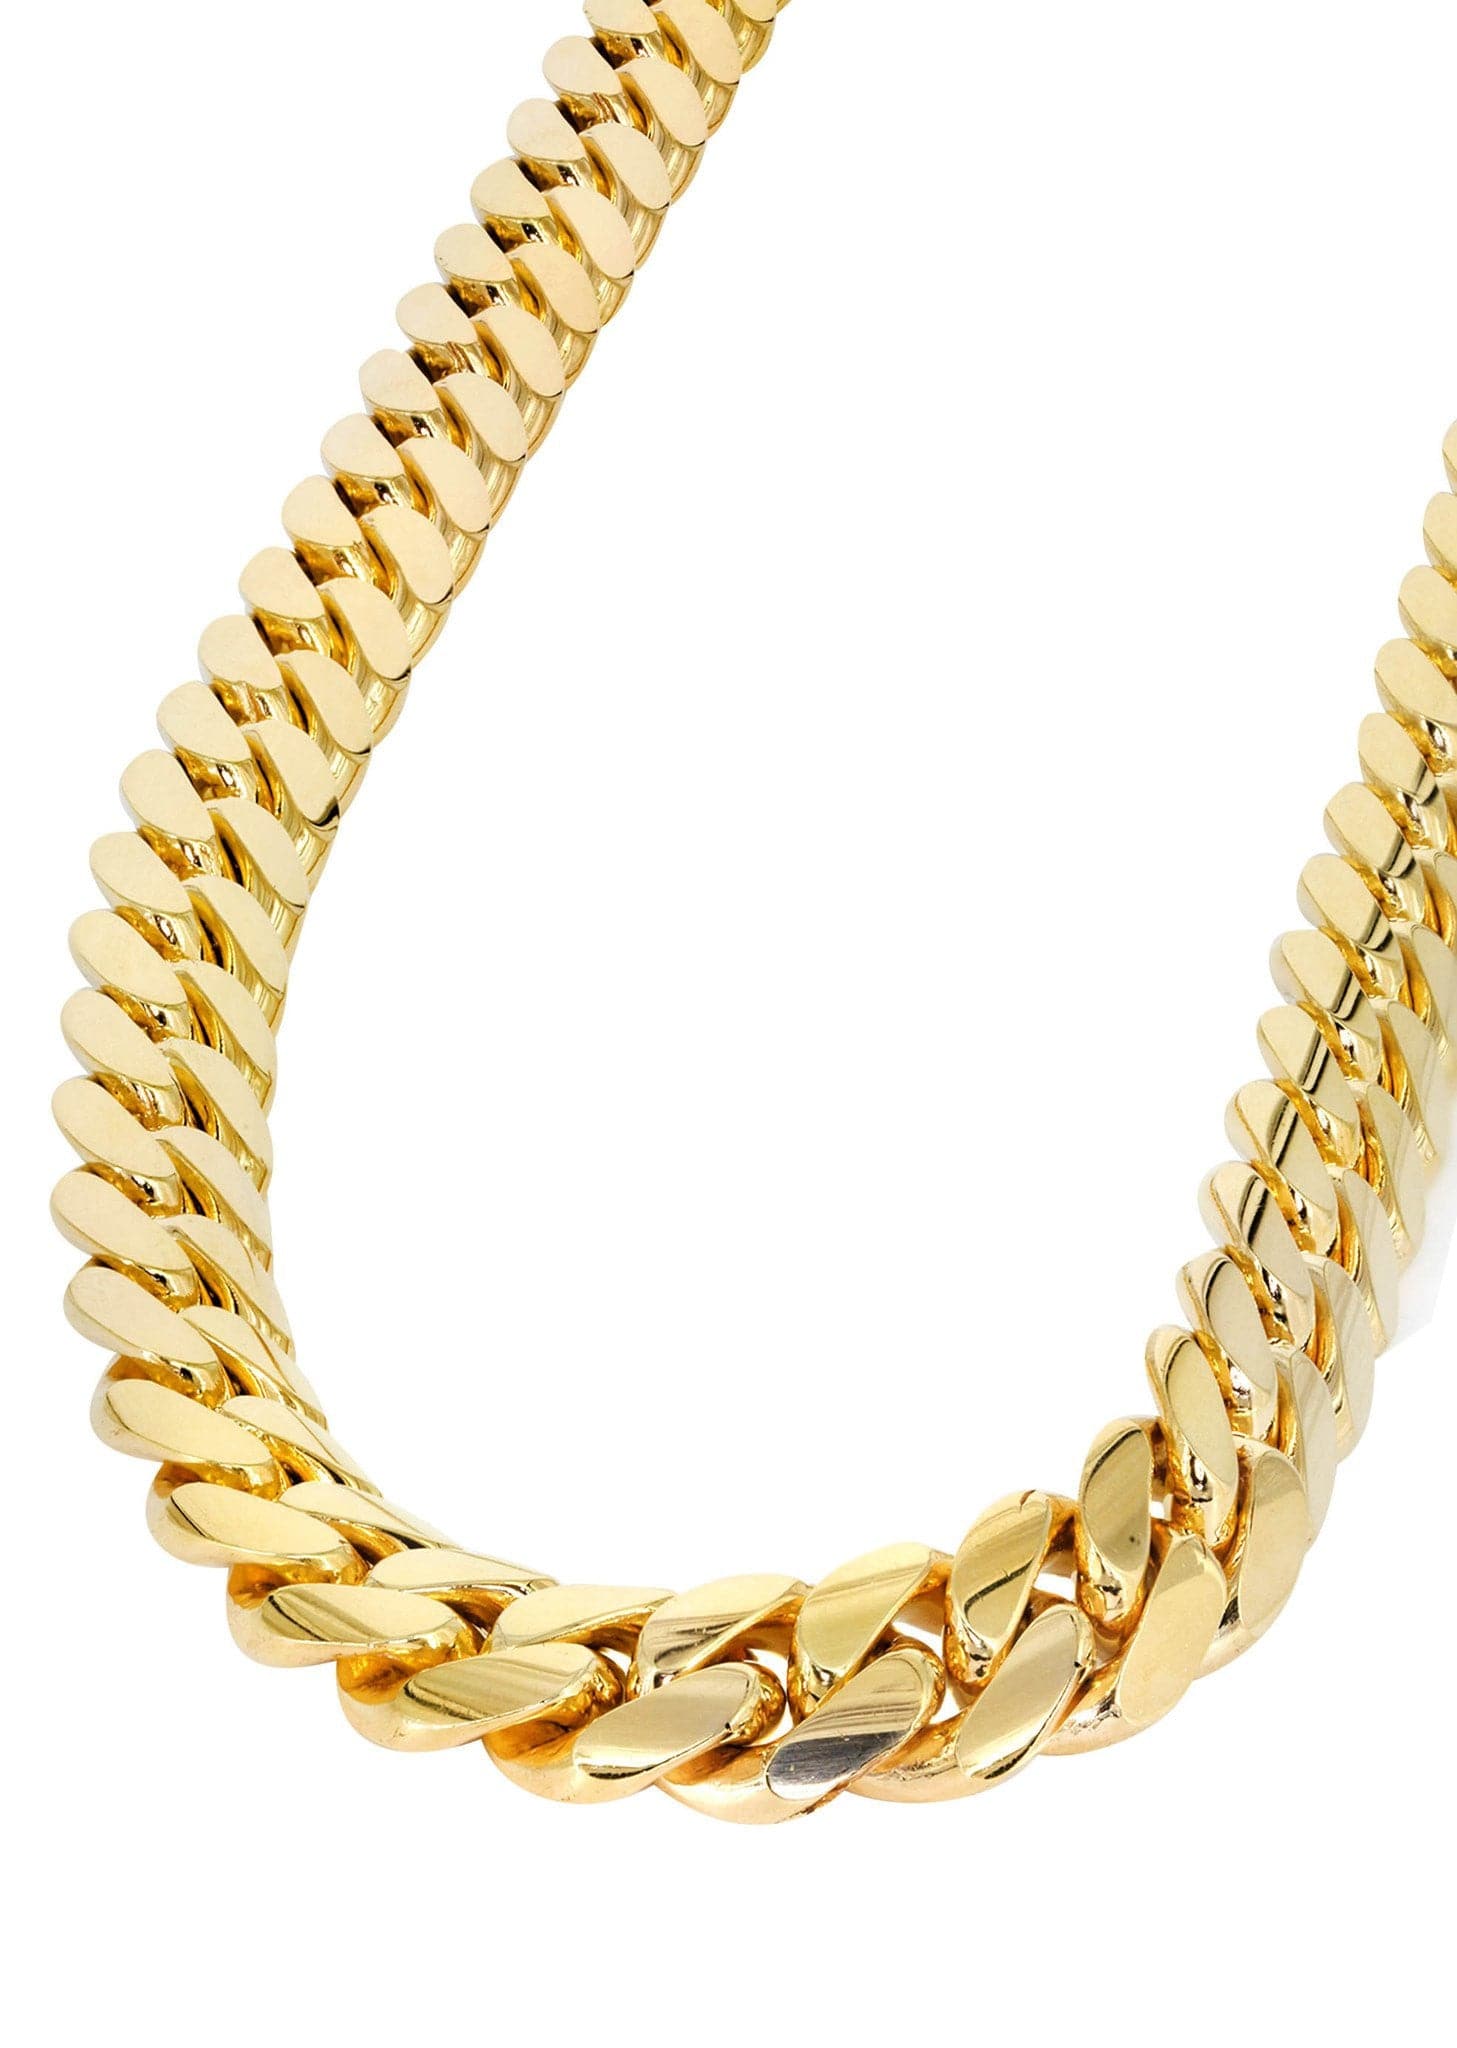 10k gold rolex chain